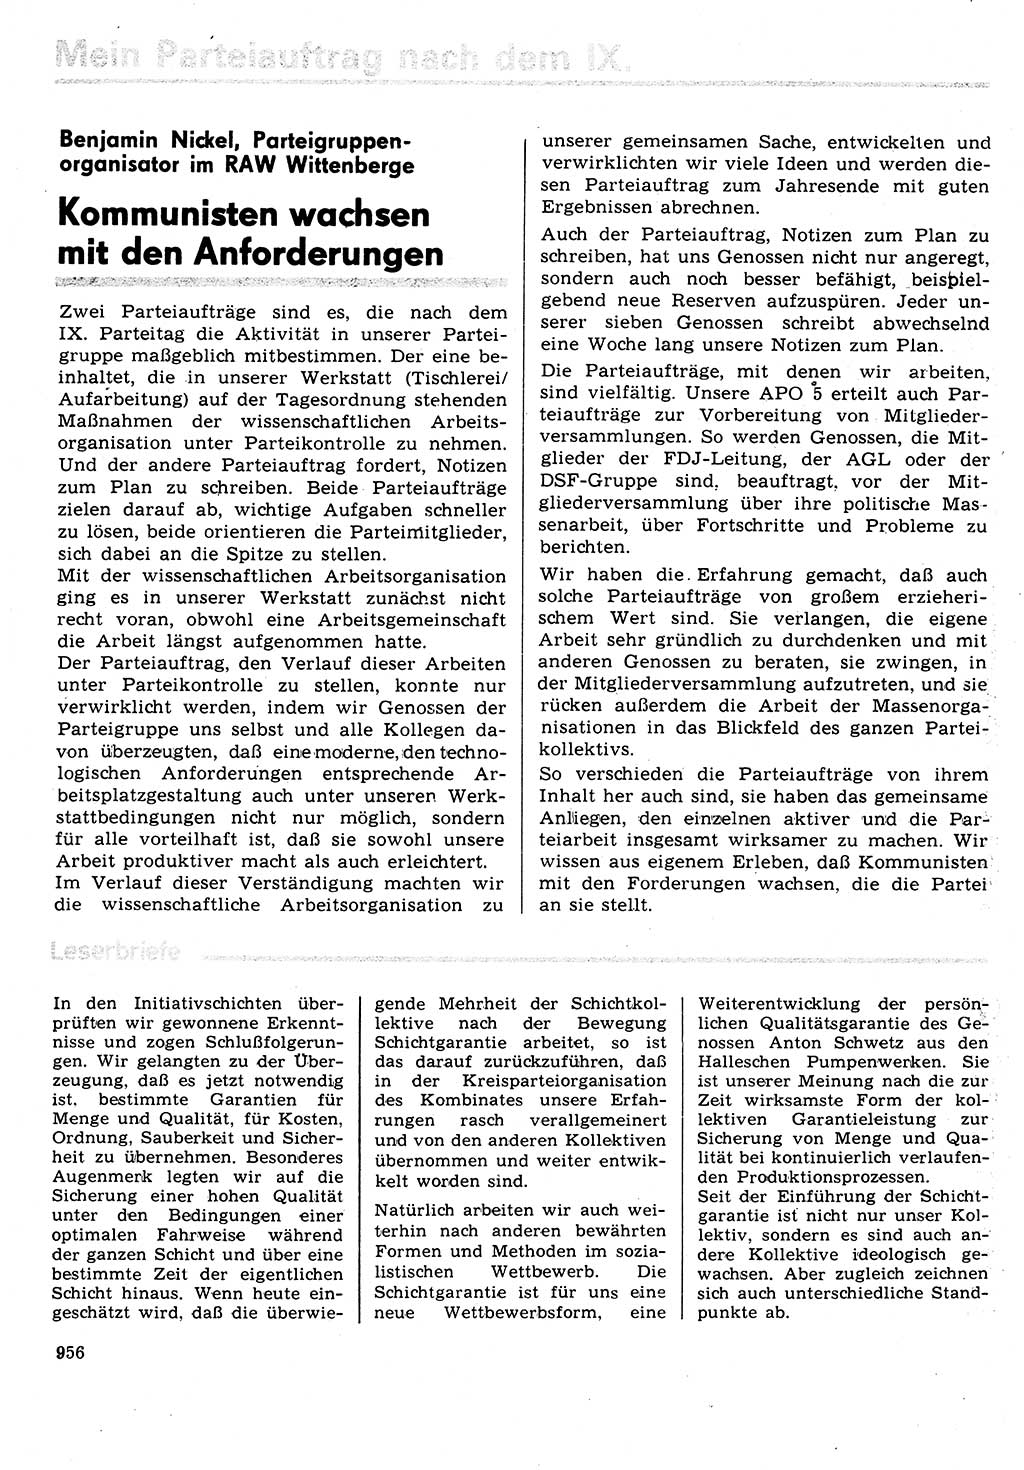 Neuer Weg (NW), Organ des Zentralkomitees (ZK) der SED (Sozialistische Einheitspartei Deutschlands) für Fragen des Parteilebens, 31. Jahrgang [Deutsche Demokratische Republik (DDR)] 1976, Seite 956 (NW ZK SED DDR 1976, S. 956)